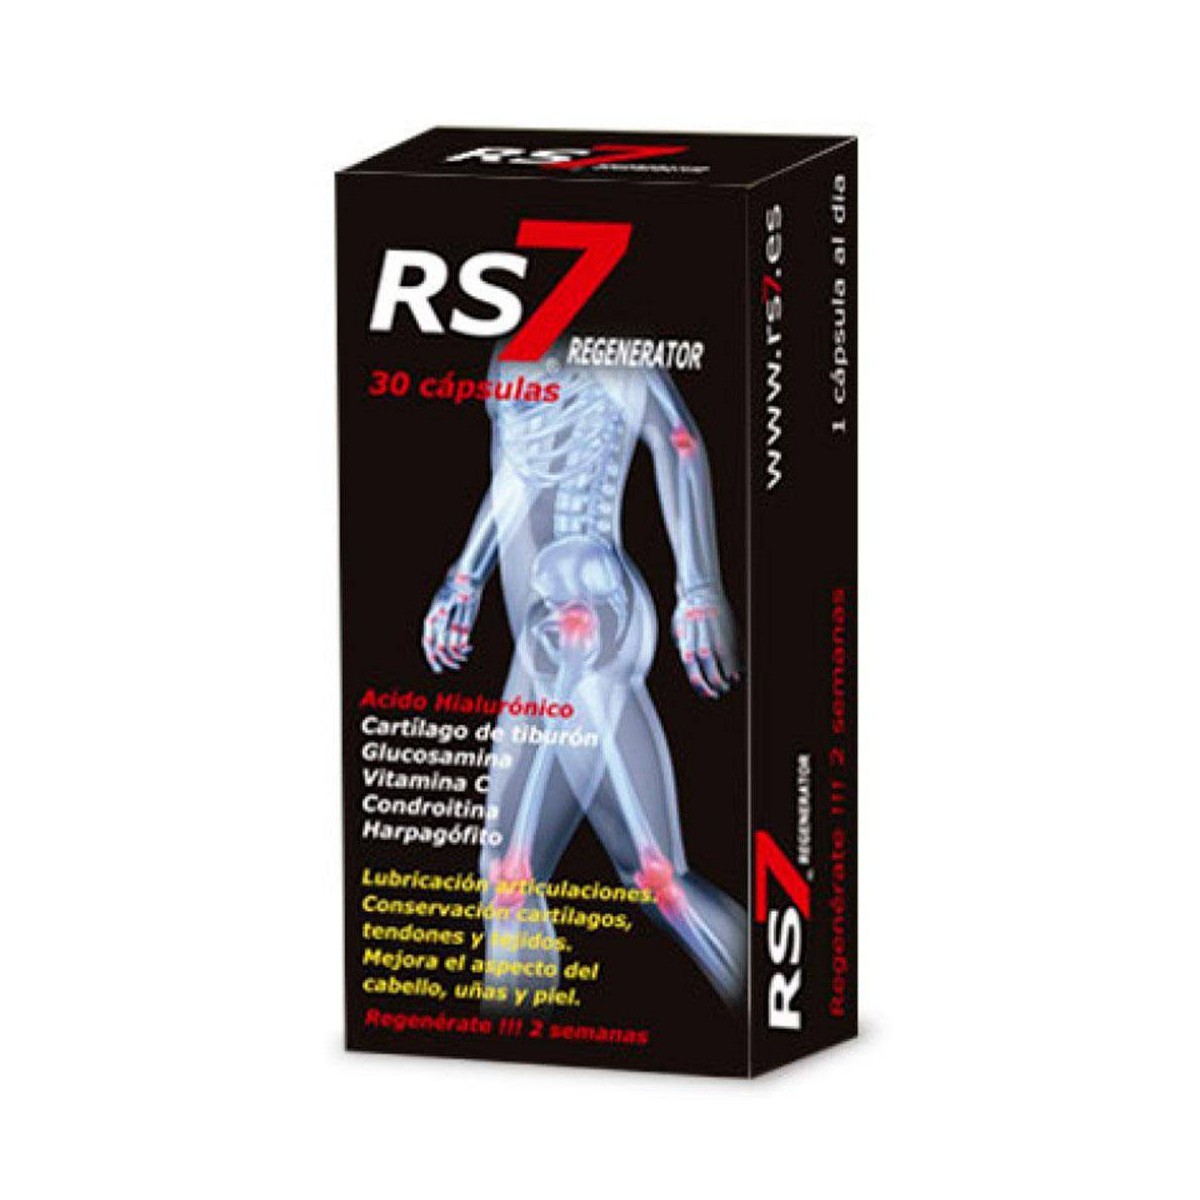 RS7 Plus Articulaciones - 30 Cápsulas Complemento Natural